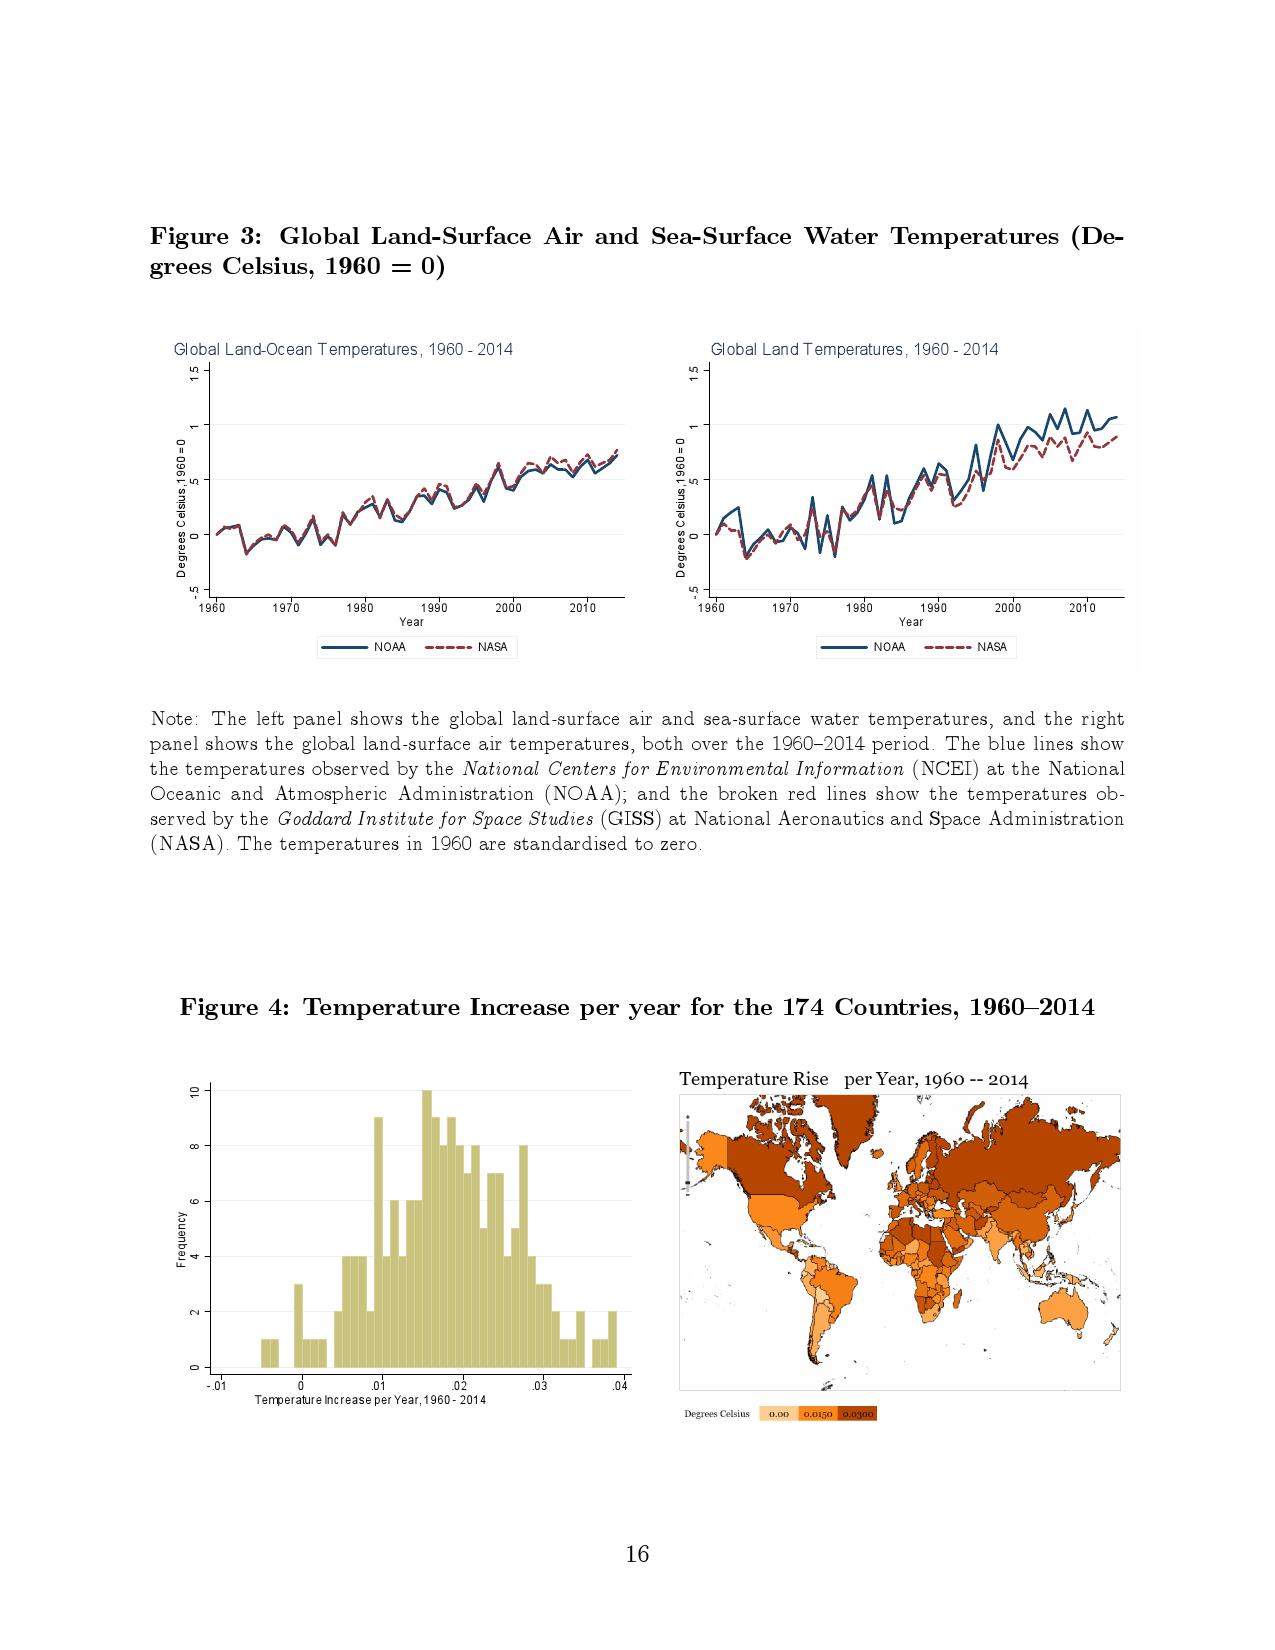 气候变化对宏观经济的长期影响：跨国分析